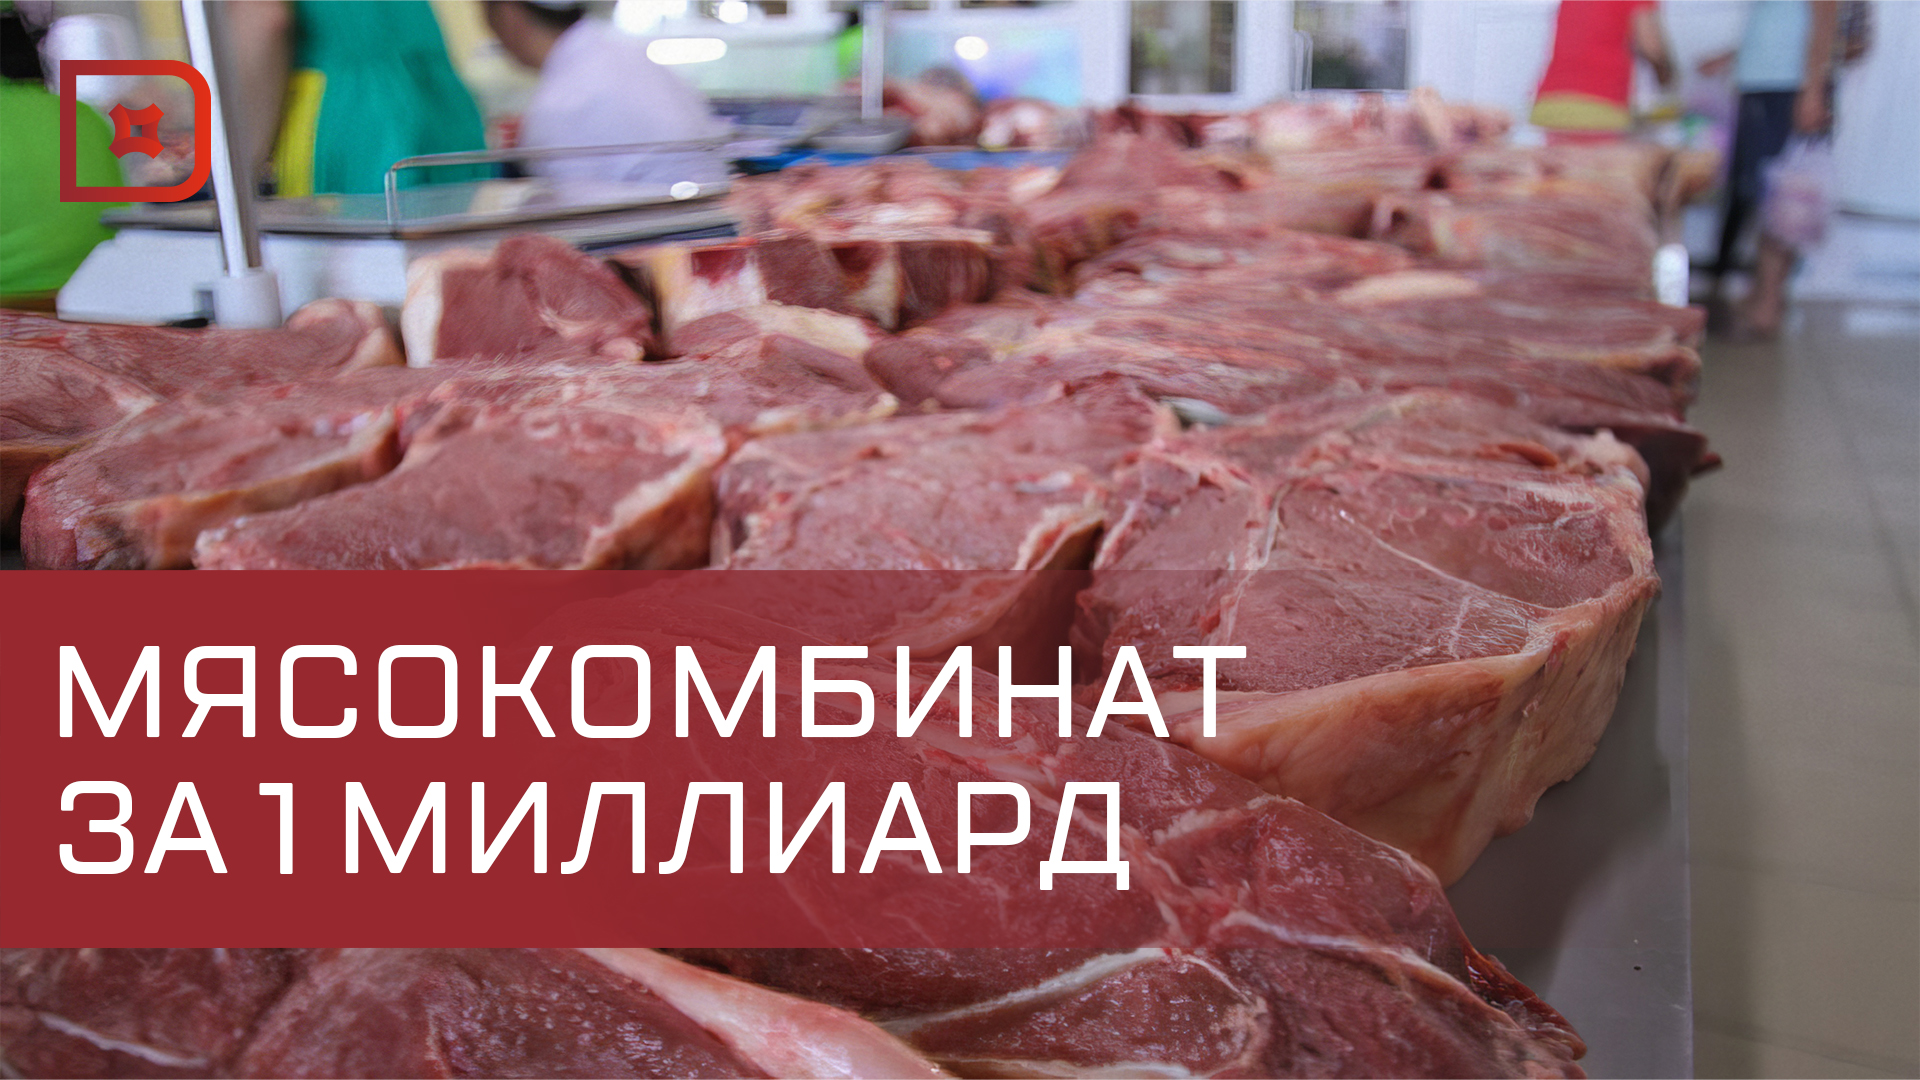 Дагестан выделит более 1 млрд рублей на строительство мясокомбината